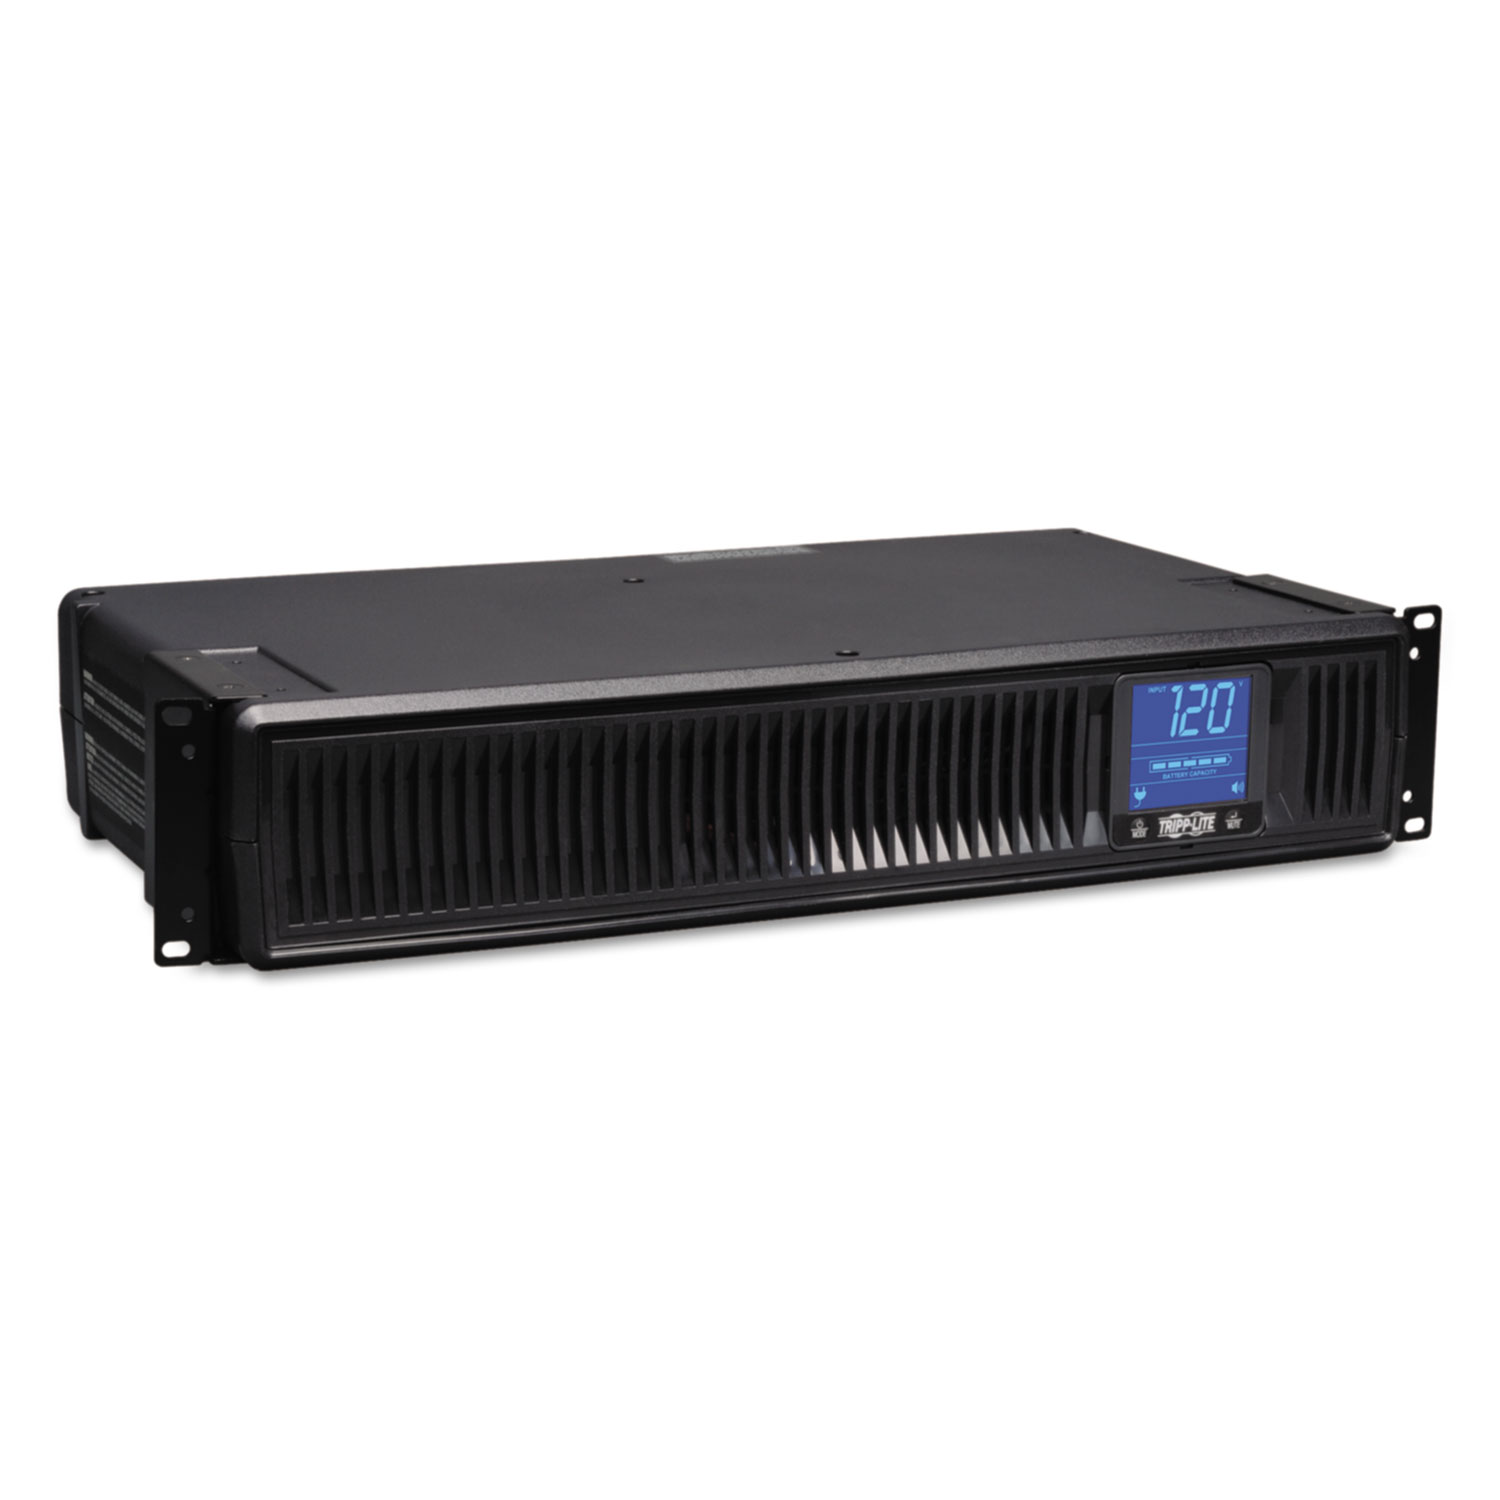 SMART1500LCD Digital Smart UPS System, 8 Outlets, 1500 VA, 480 J